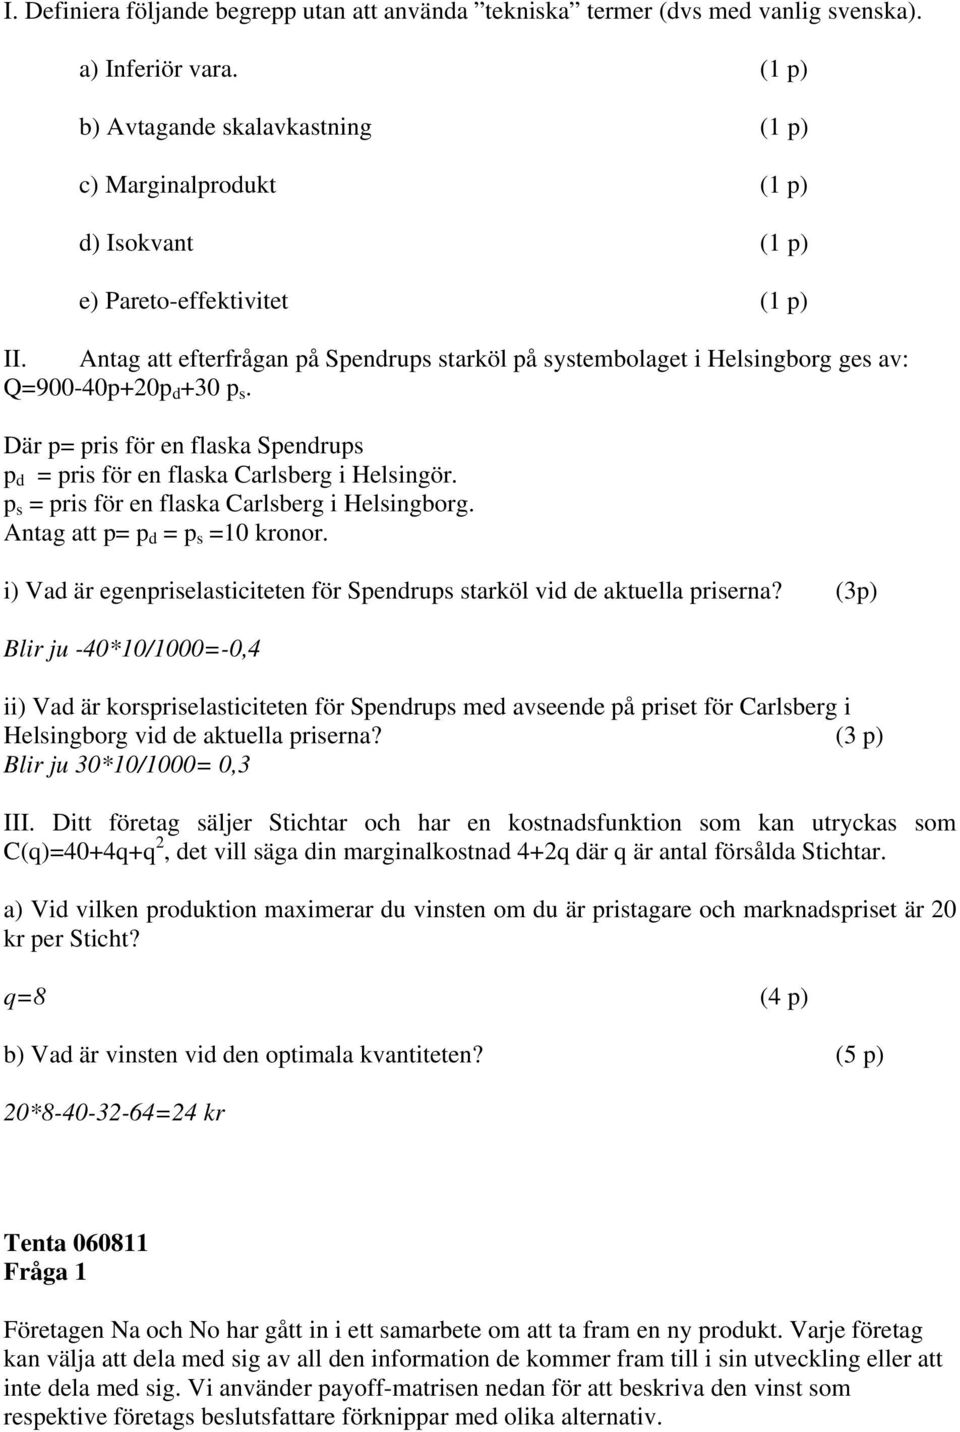 Antag att efterfrågan på Spendrups starköl på systembolaget i Helsingborg ges av: Q=900-40p+20p d +30 p s. Där p= pris för en flaska Spendrups p d = pris för en flaska Carlsberg i Helsingör.